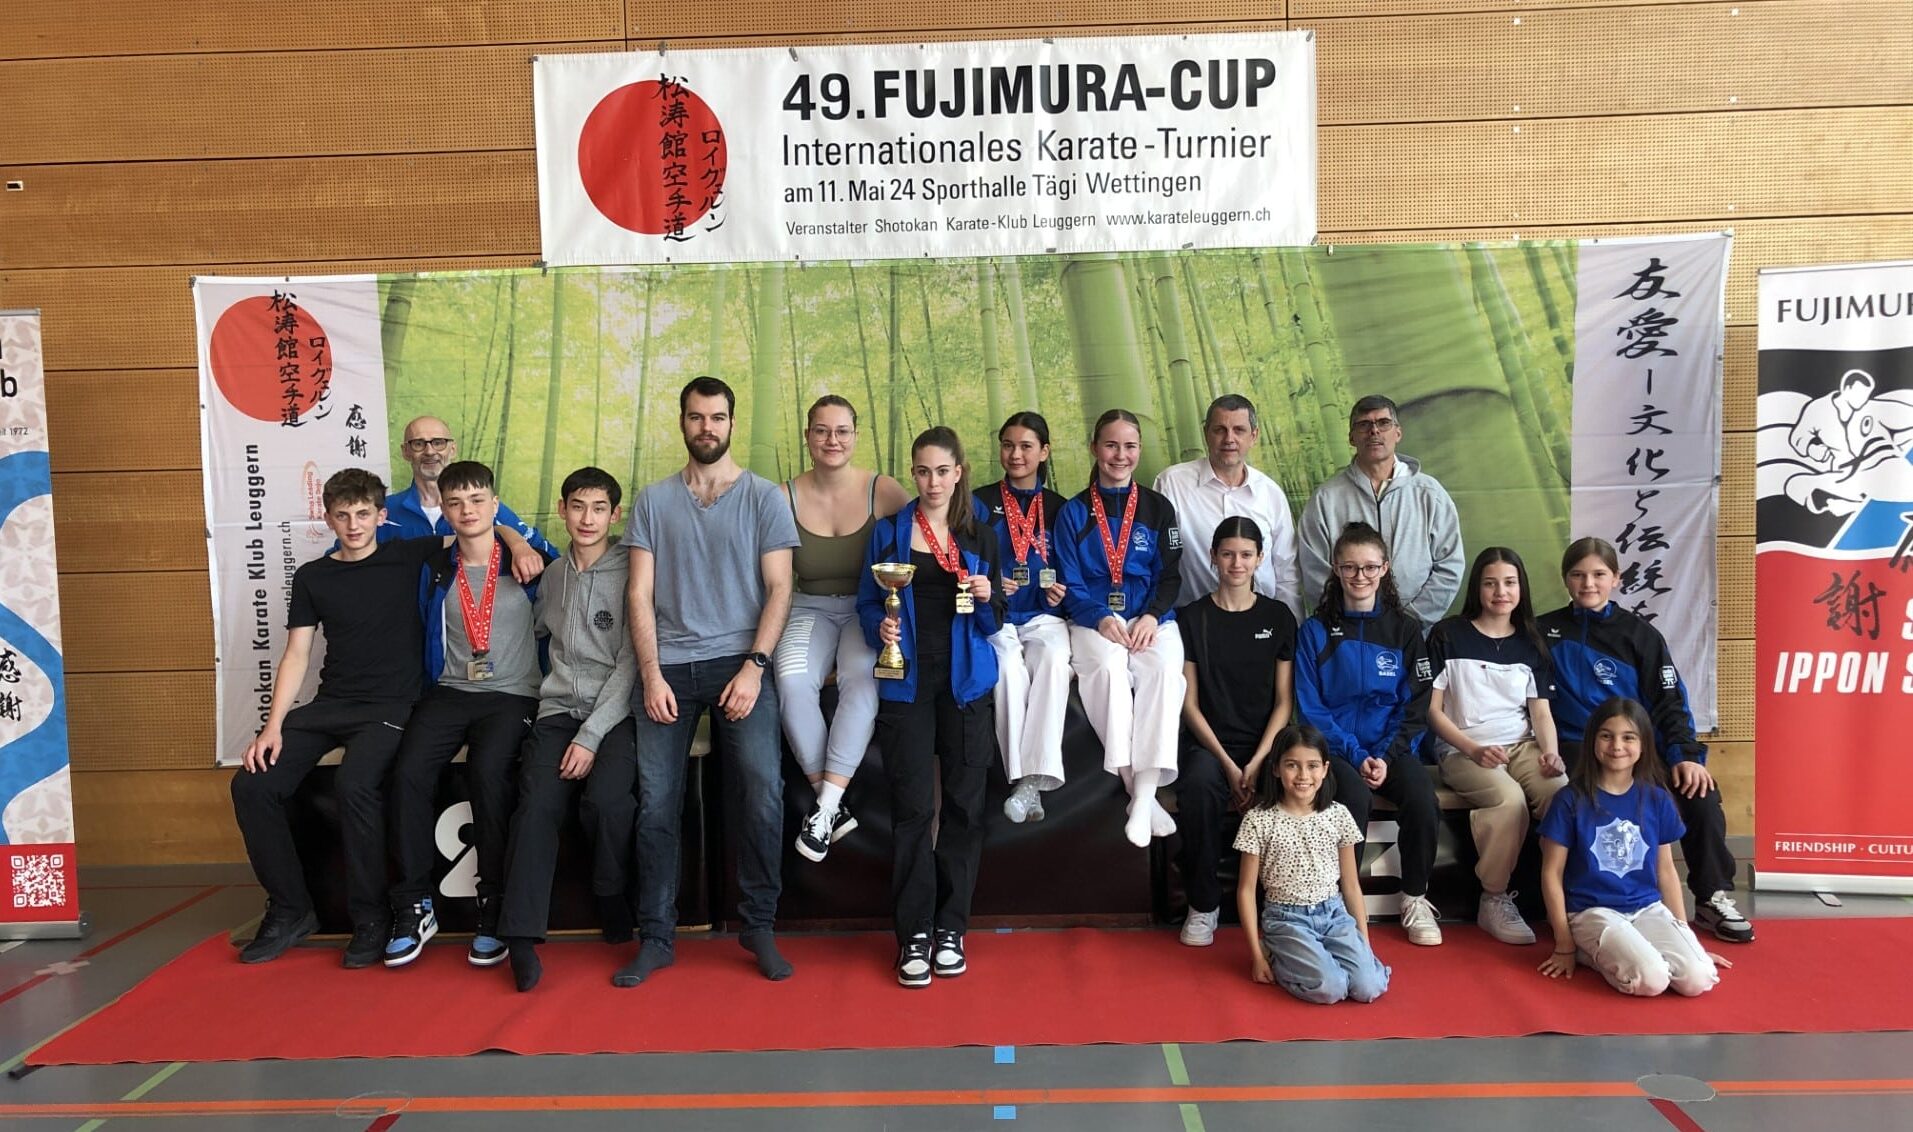 Karatekai Basel - 13 Medaillen am 49. Fujimura Cup